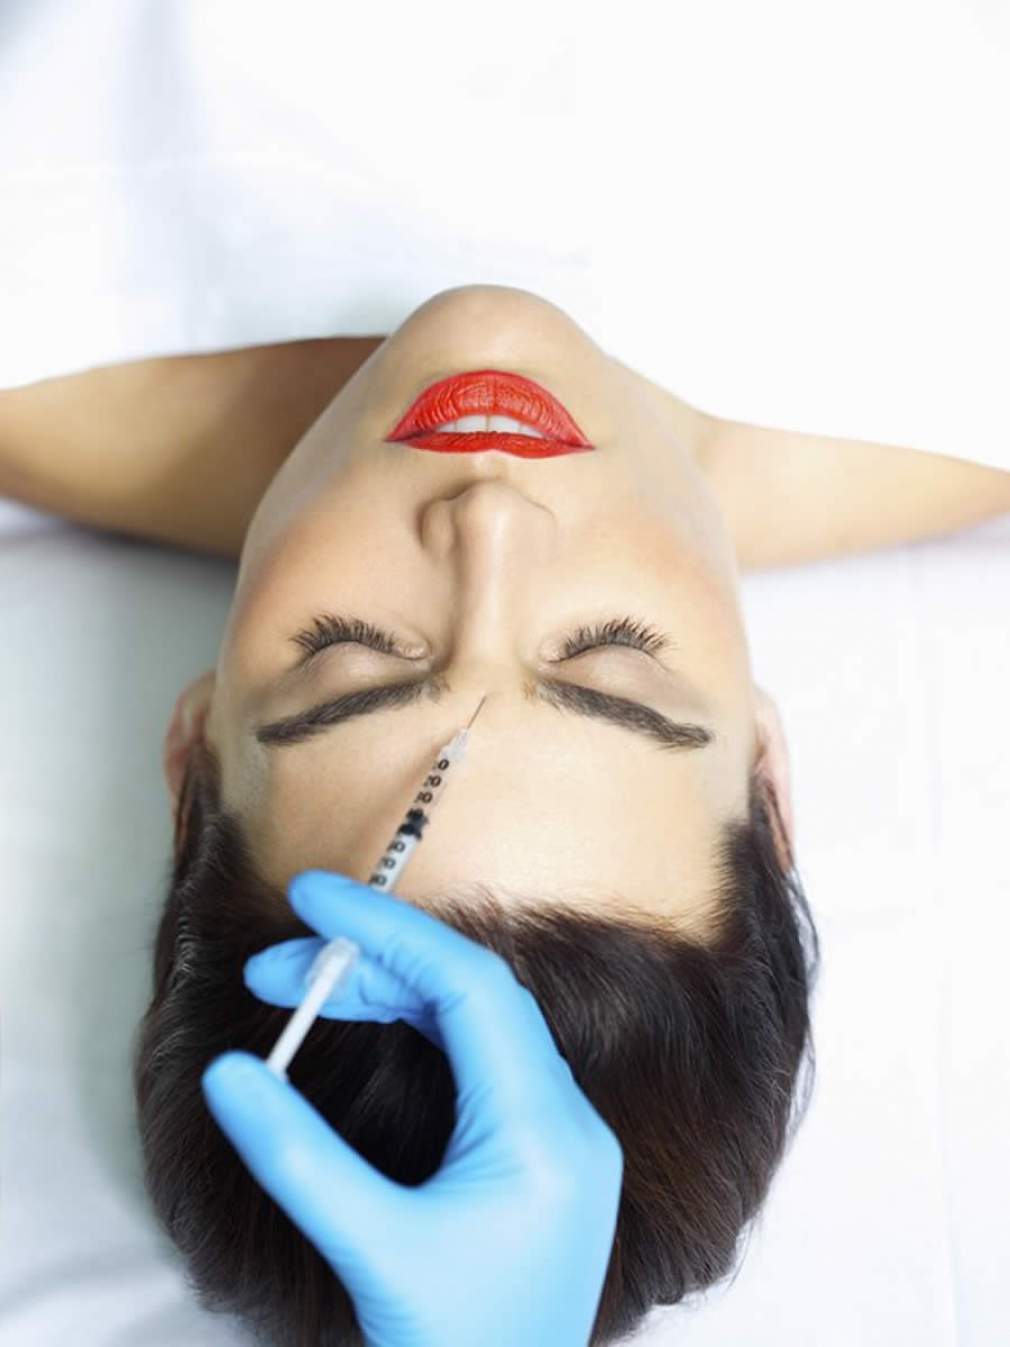 Litlift: tendência oferece otimização facial com efeito natural, por meio de preenchimento e 'botox'